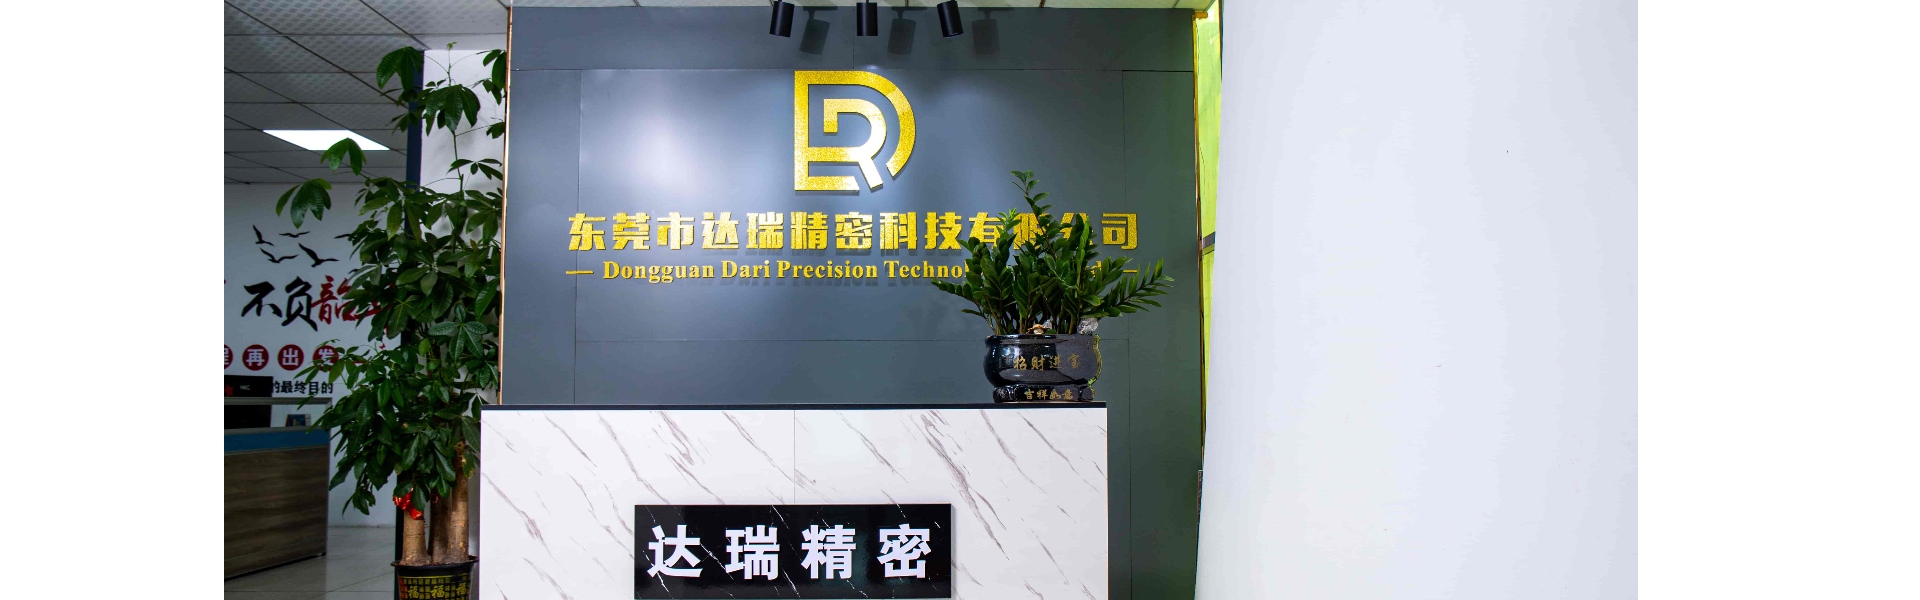 แม่พิมพ์พลาสติก, การฉีดขึ้นรูป, เปลือกพลาสติก,Dongguan Darui Precision Technology Co., Ltd.